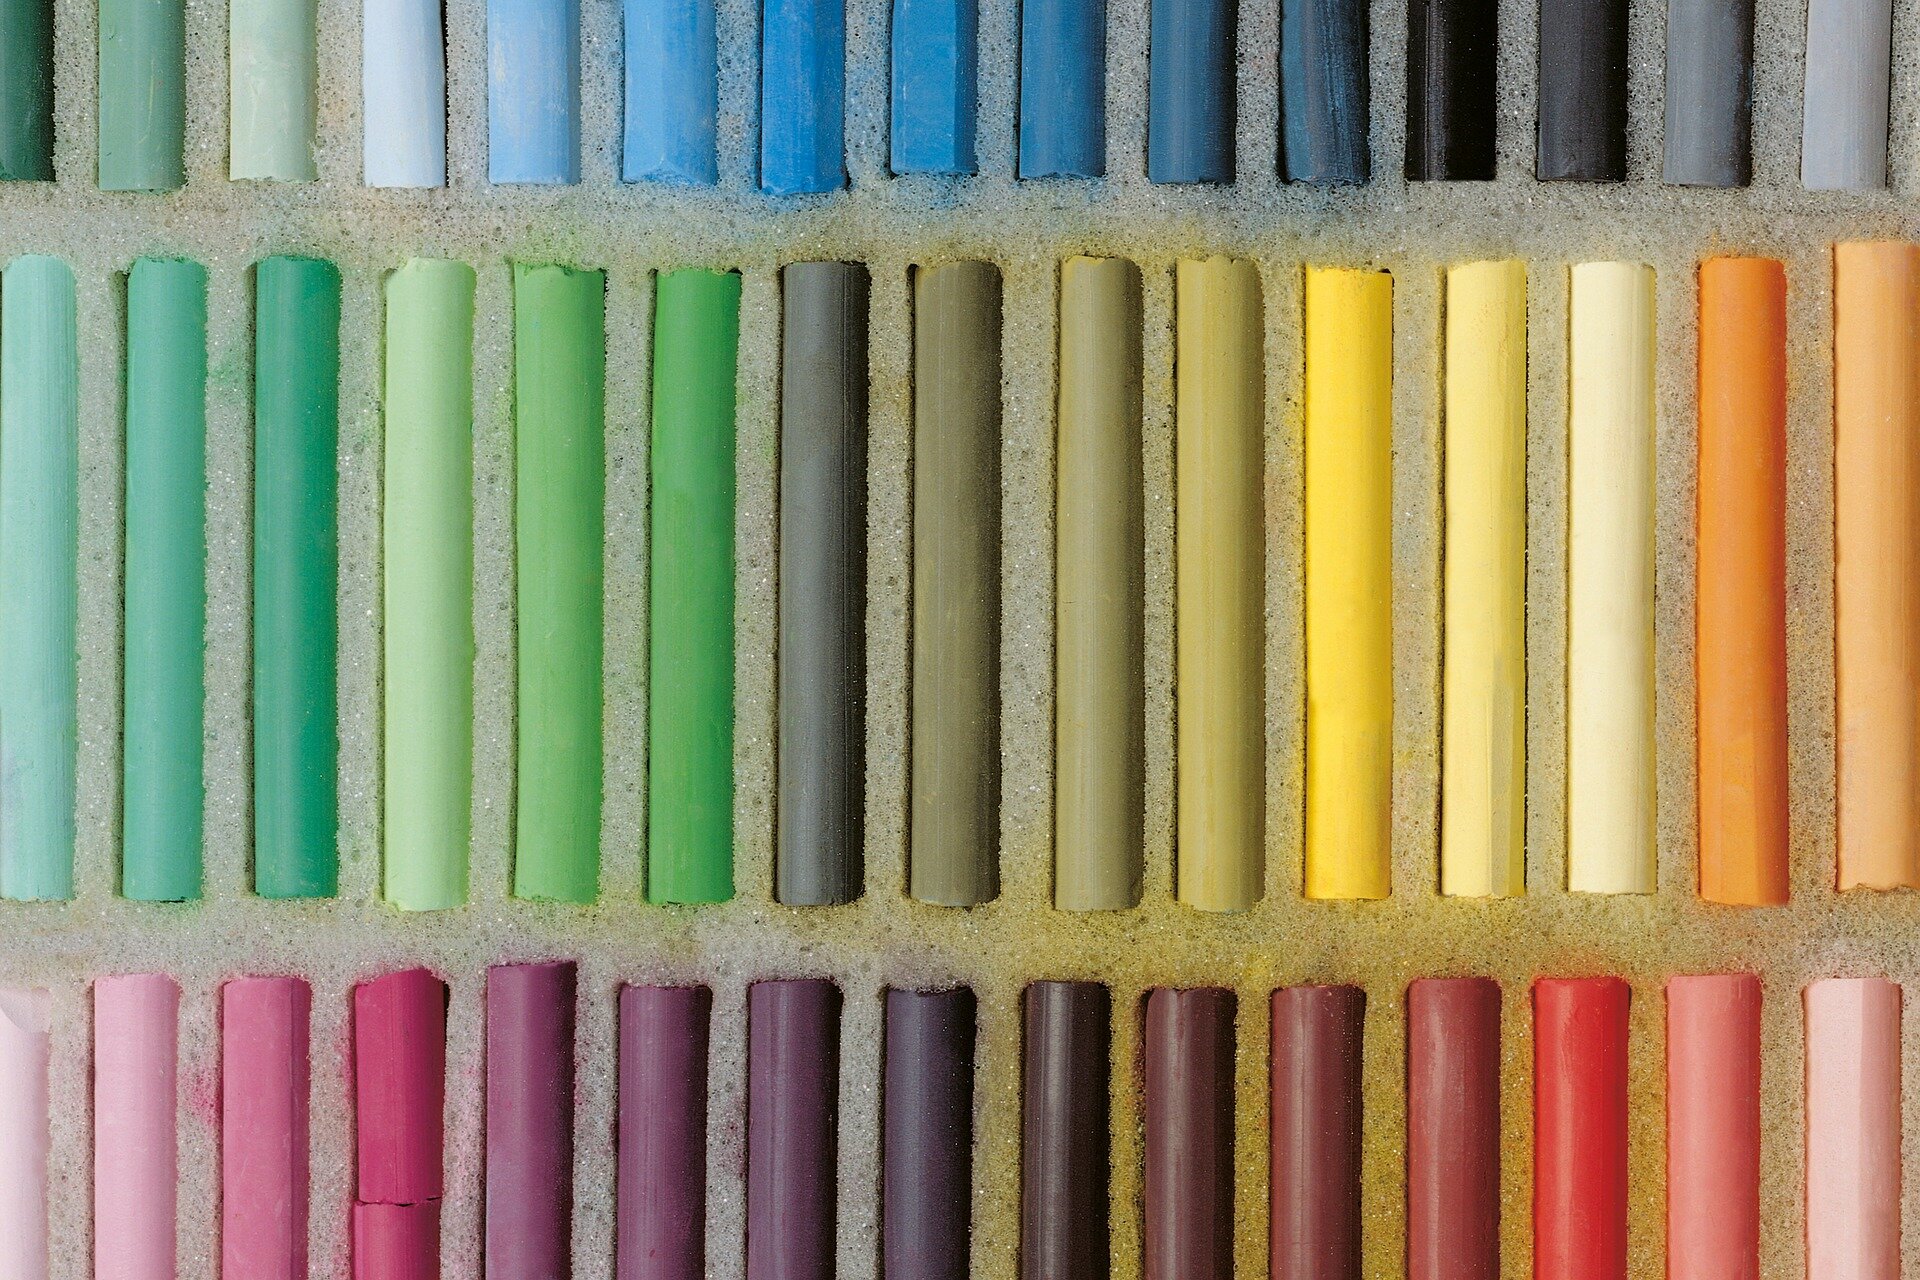 Zdjęcie przedstawia fragment zestawu kolorowych suchych pasteli. Kolorowe pałeczki o grubości centymetra i długości 8 centymetrów ułożone są równolegle do siebie w trzech poziomych rzędach. W górnym rzędzie przeważają odcienie błękitów i szarości, w środkowym od zieleni po lewej przechodzą przez oliwkowe na środku do żółtych i pomarańczowych po prawej. W dolnym rzędzie od jasnych fioletów z lewej, przez purpurę do brązów na środku po jaśniejące coraz bardziej czerwienie na prawo.